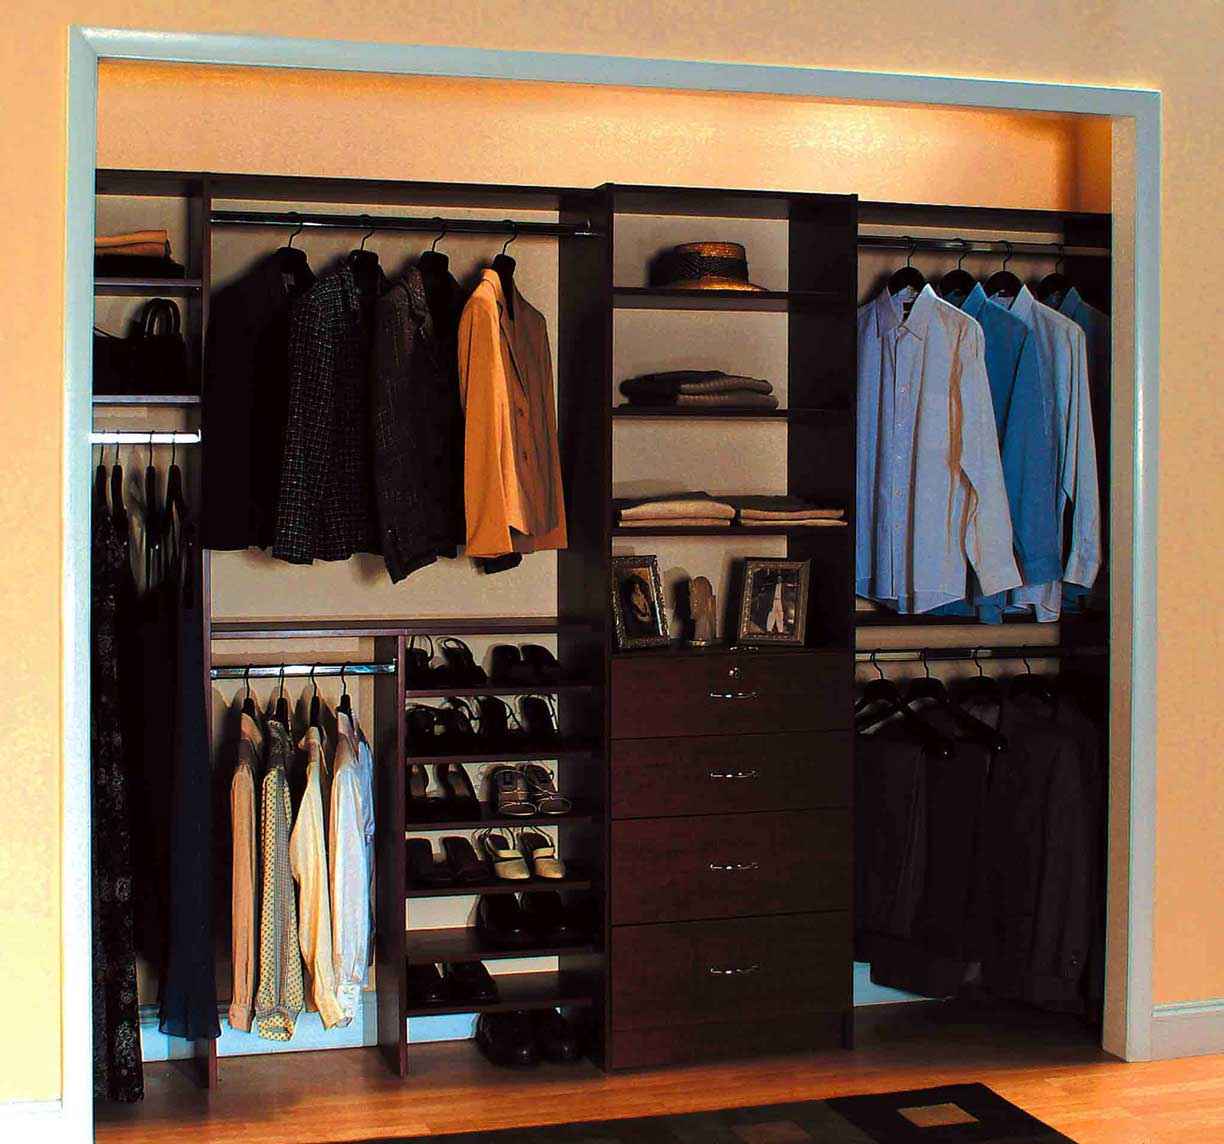 Men's closet idea for small space.